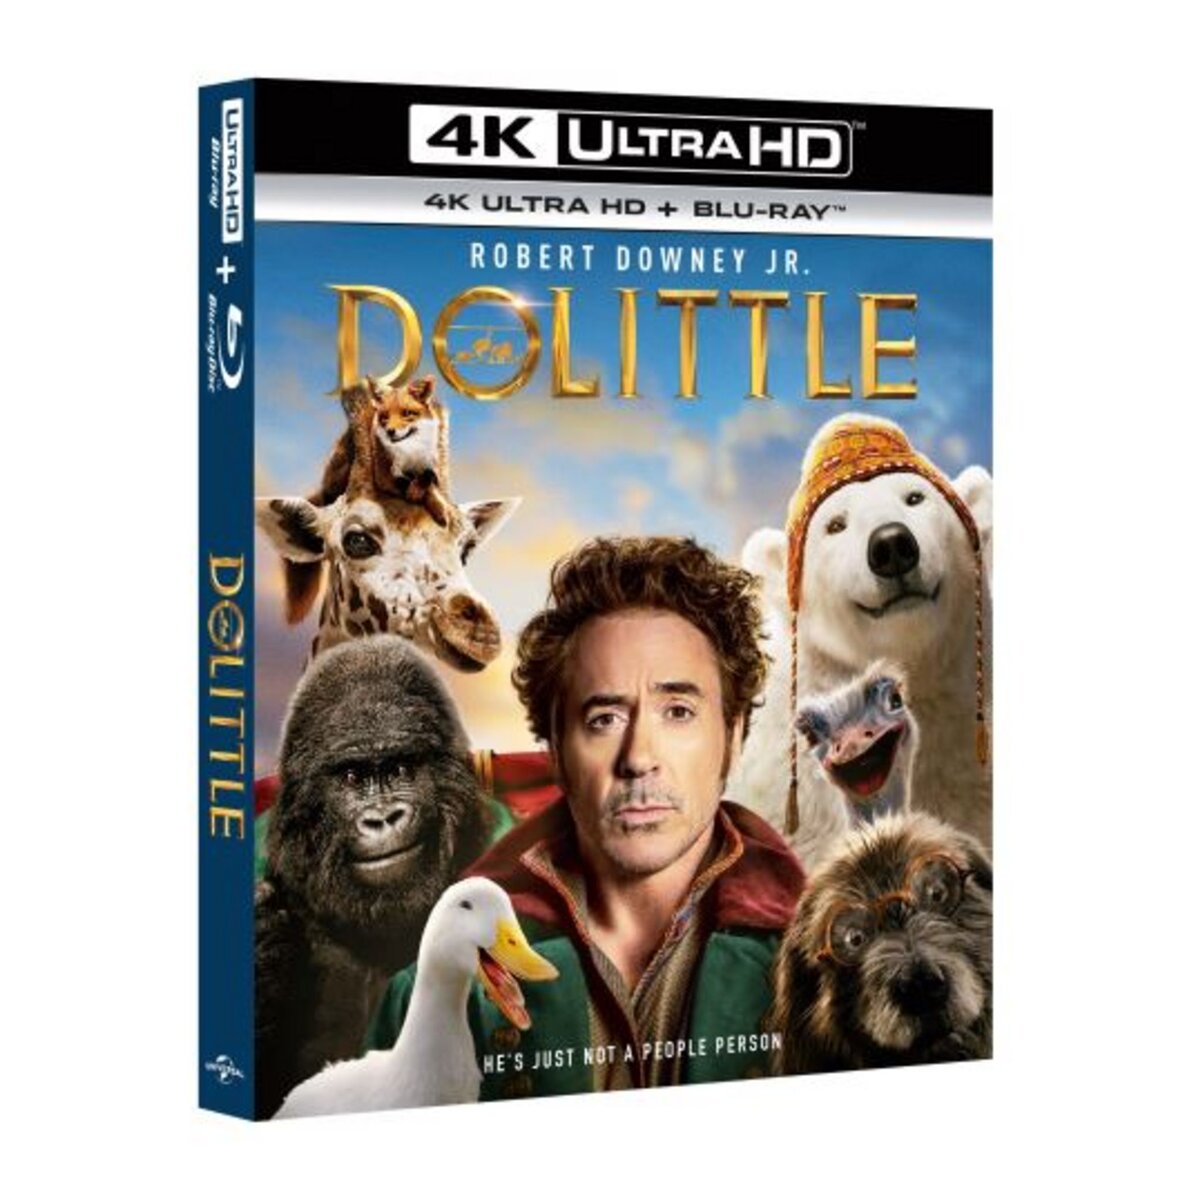 Le Voyage du Dr Doolittle Blu-Ray 4K